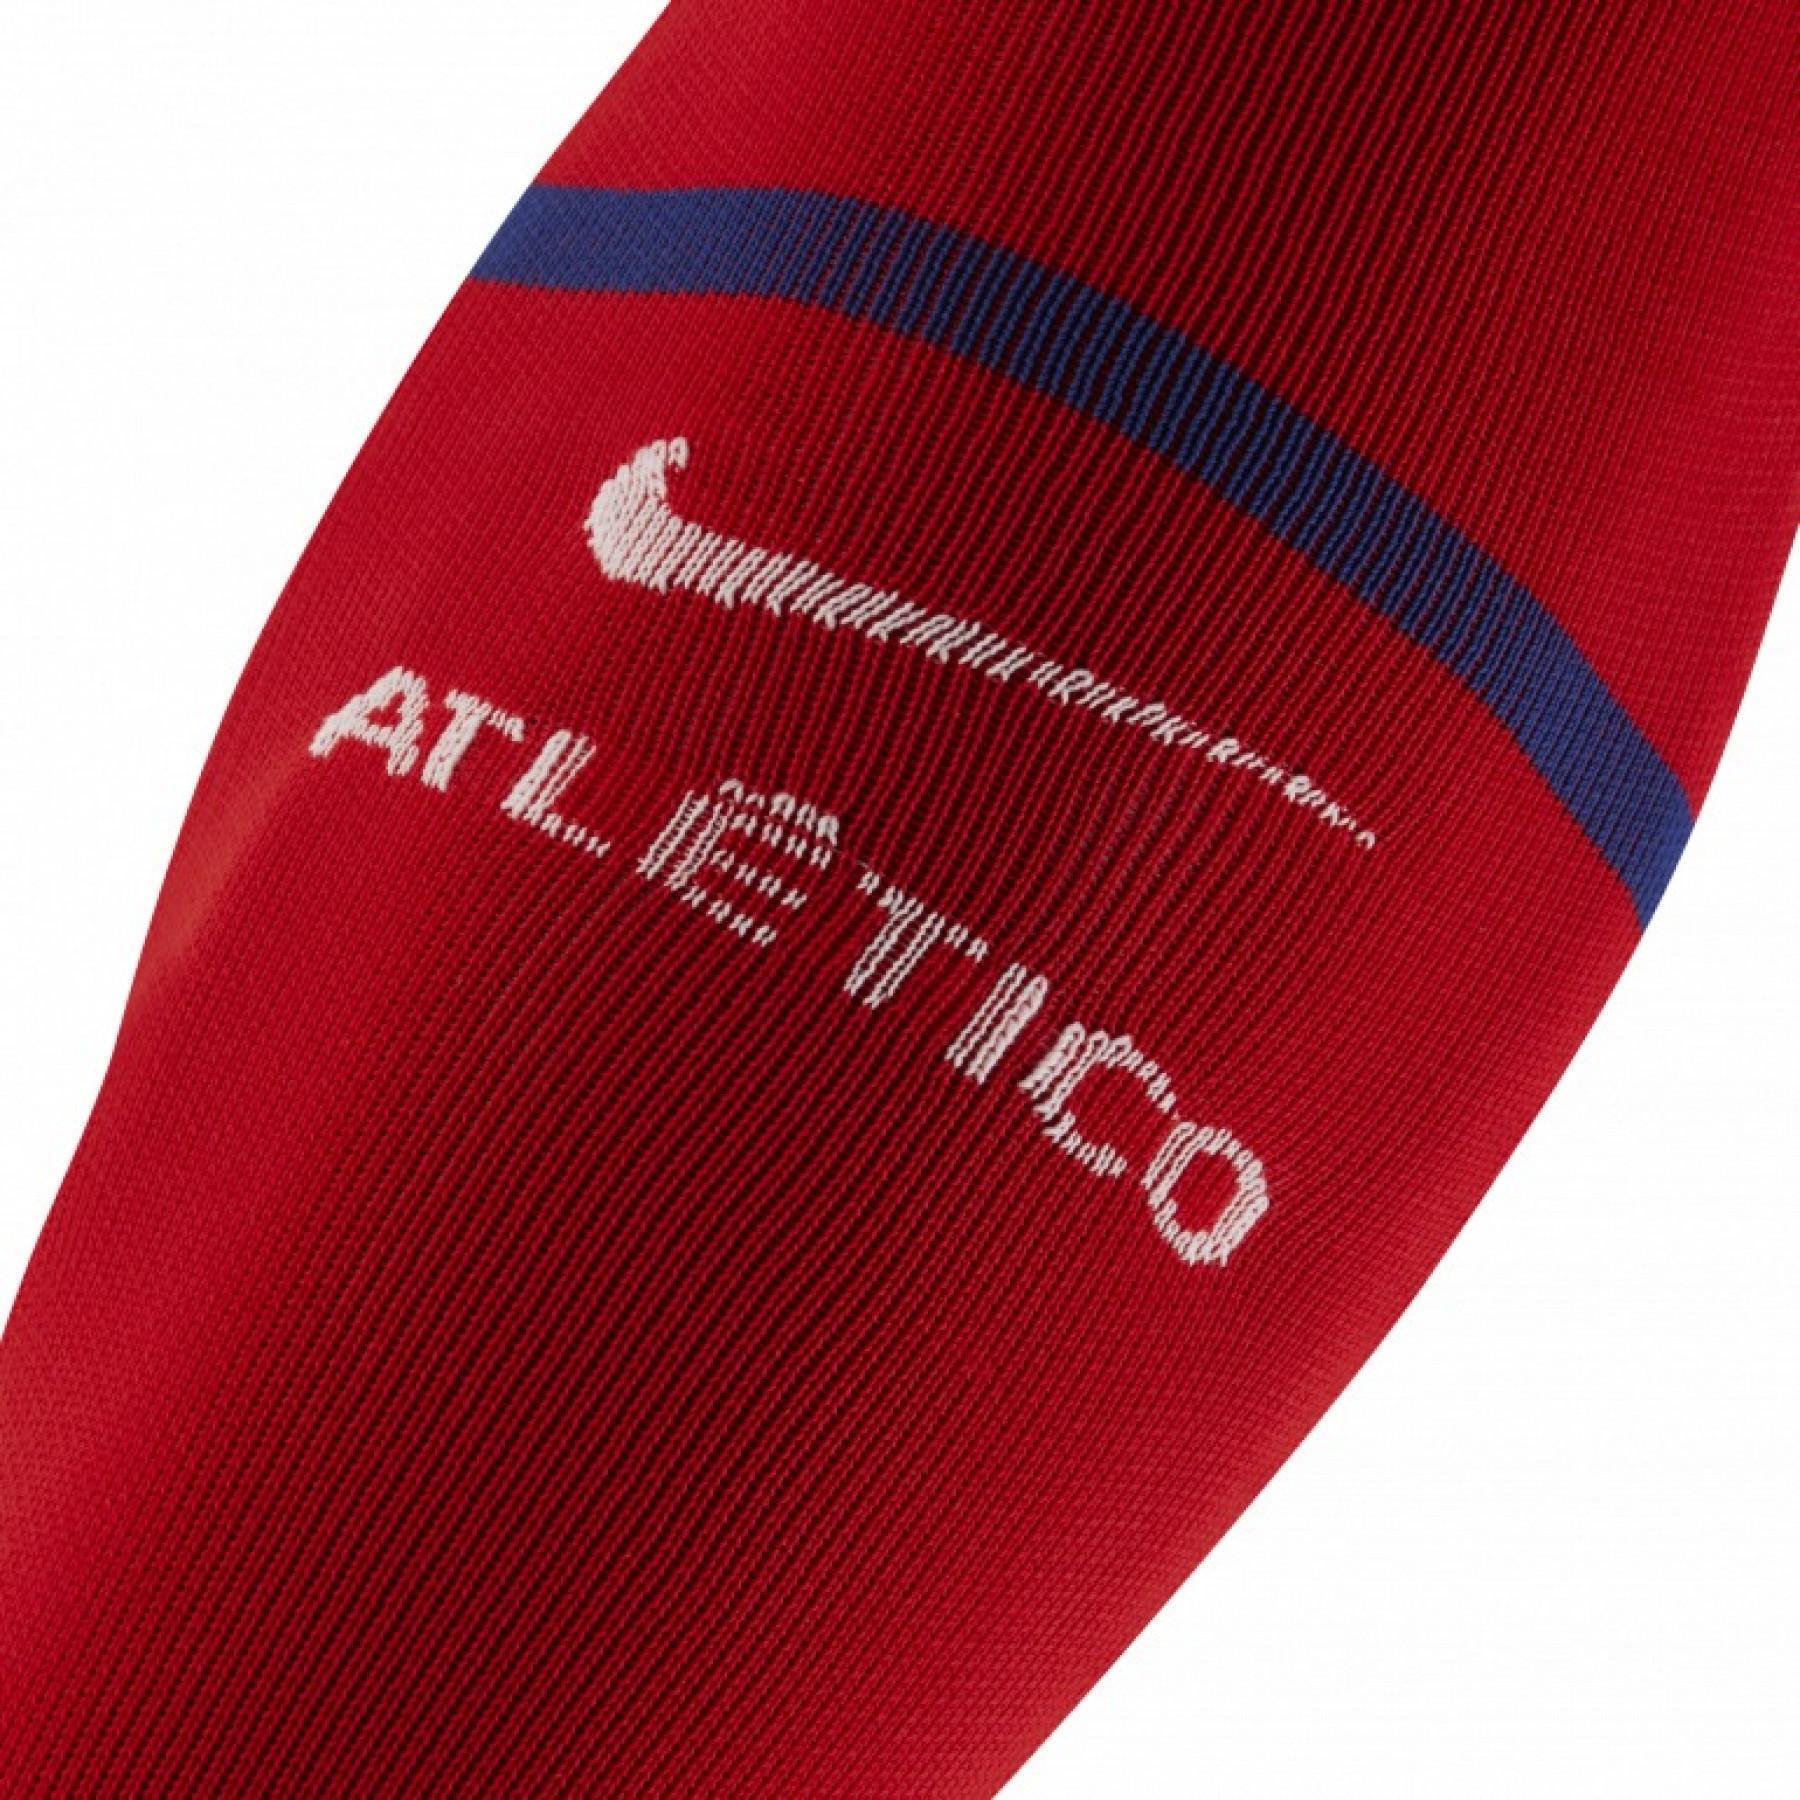 Socken Atlético Madrid 2019/20